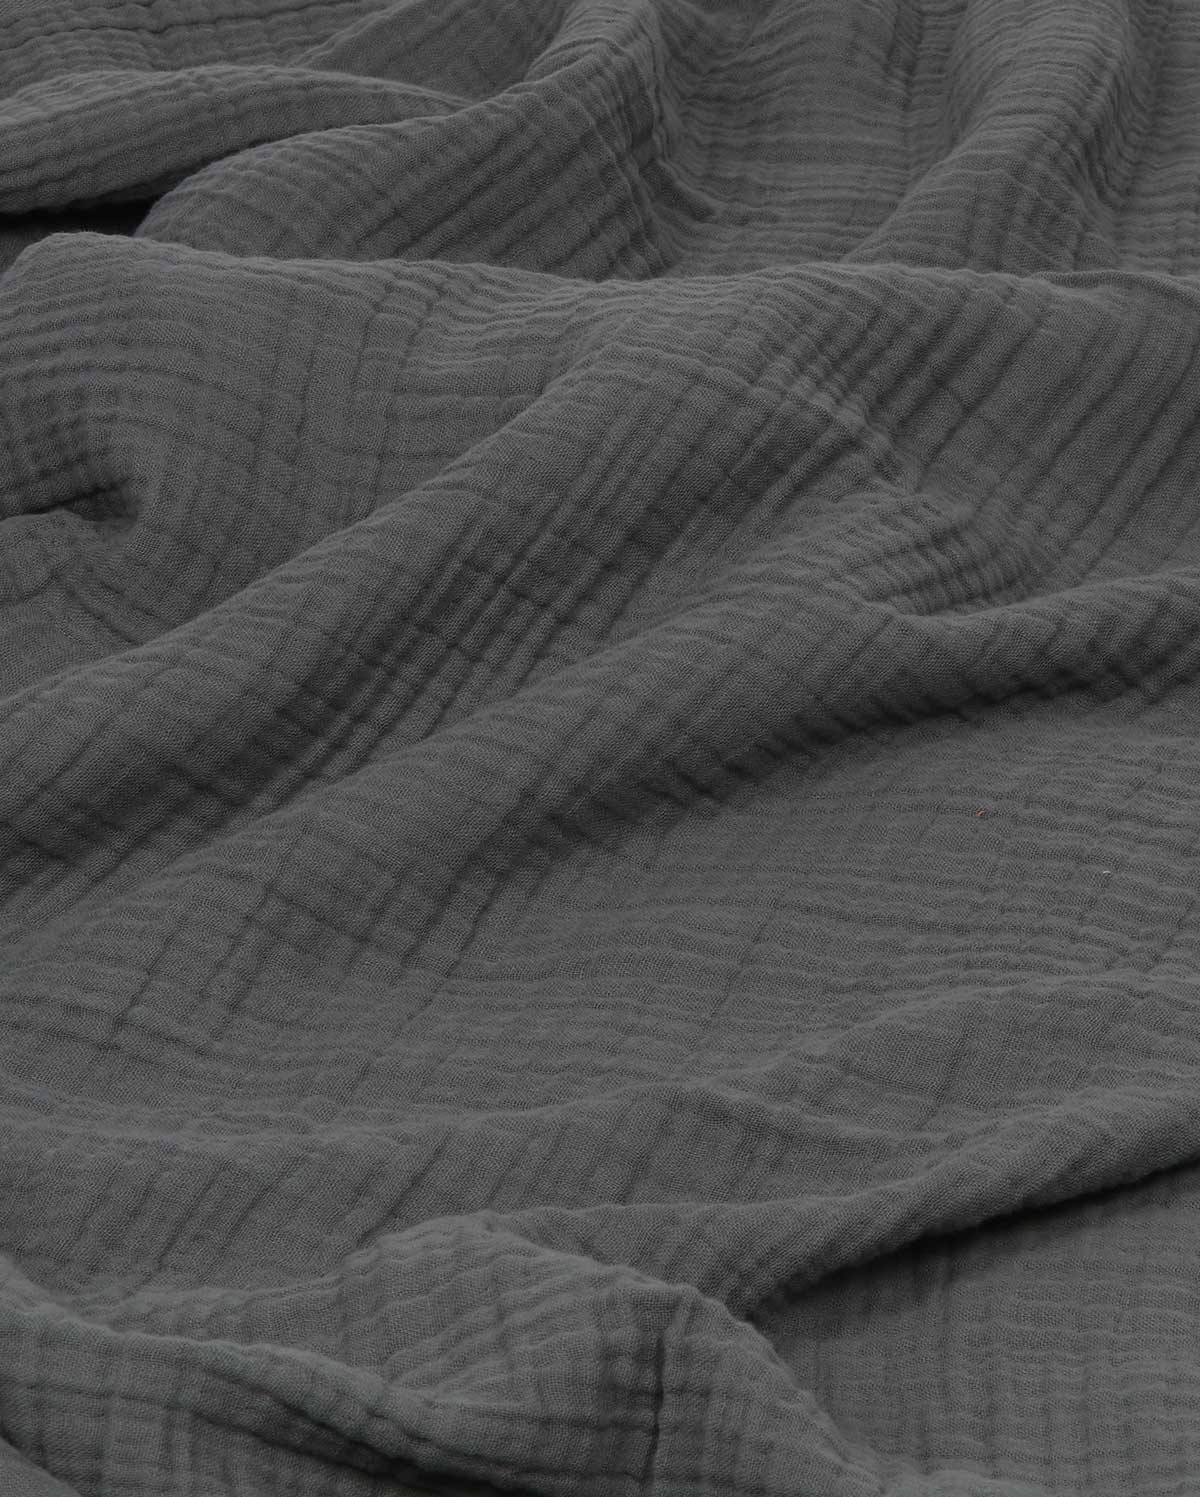 Mollis Muslin Cotton Blanket - Anthracite